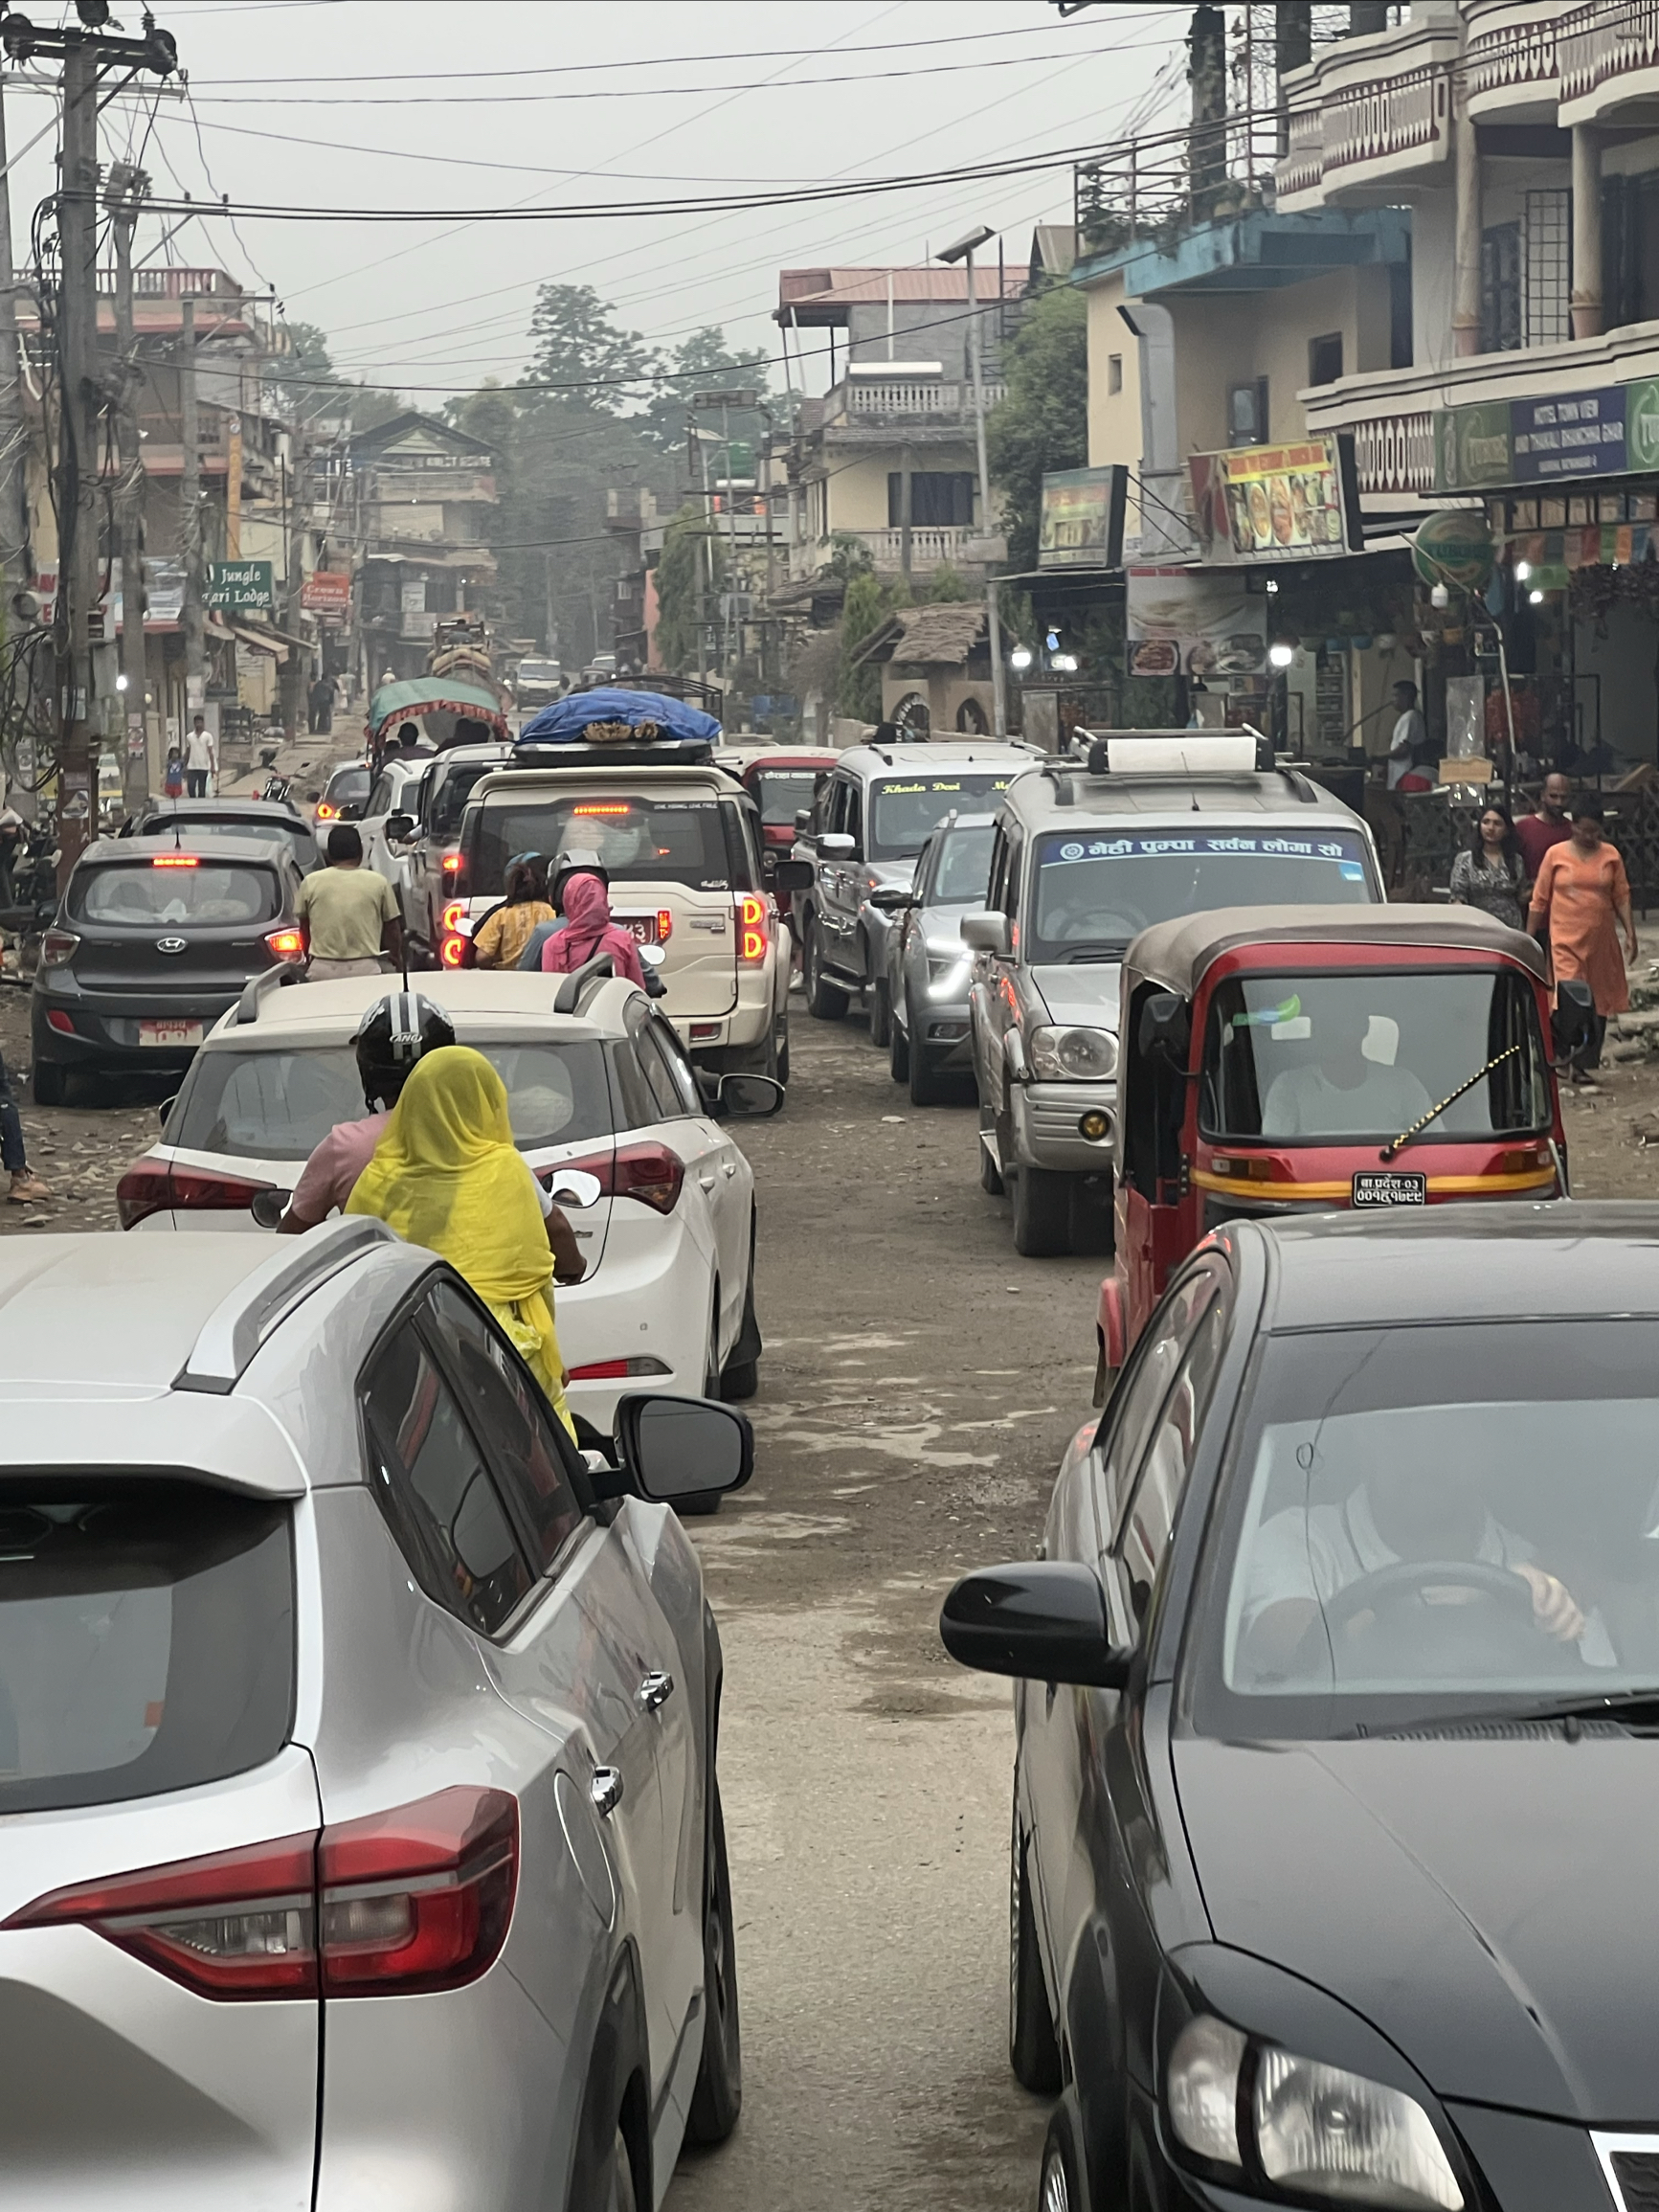 尼泊尔神奇的交通日常^_^